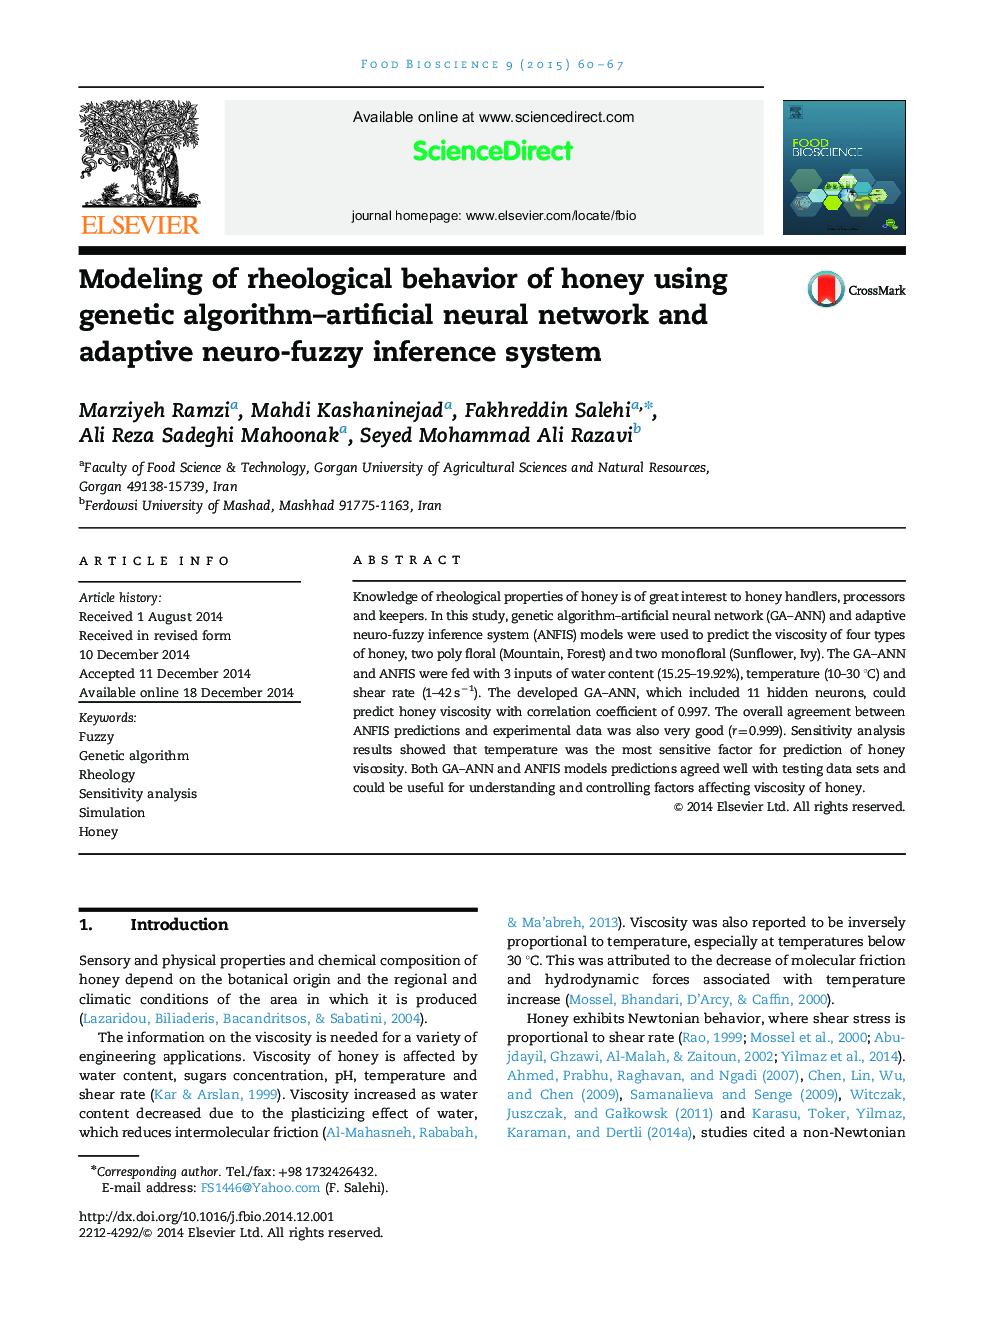 مدل سازی رفتار رئولوژیکی عسل با استفاده از الگوریتم ژنتیک شبکه عصبی مصنوعی و سیستم استنتاج فازی سازگار 